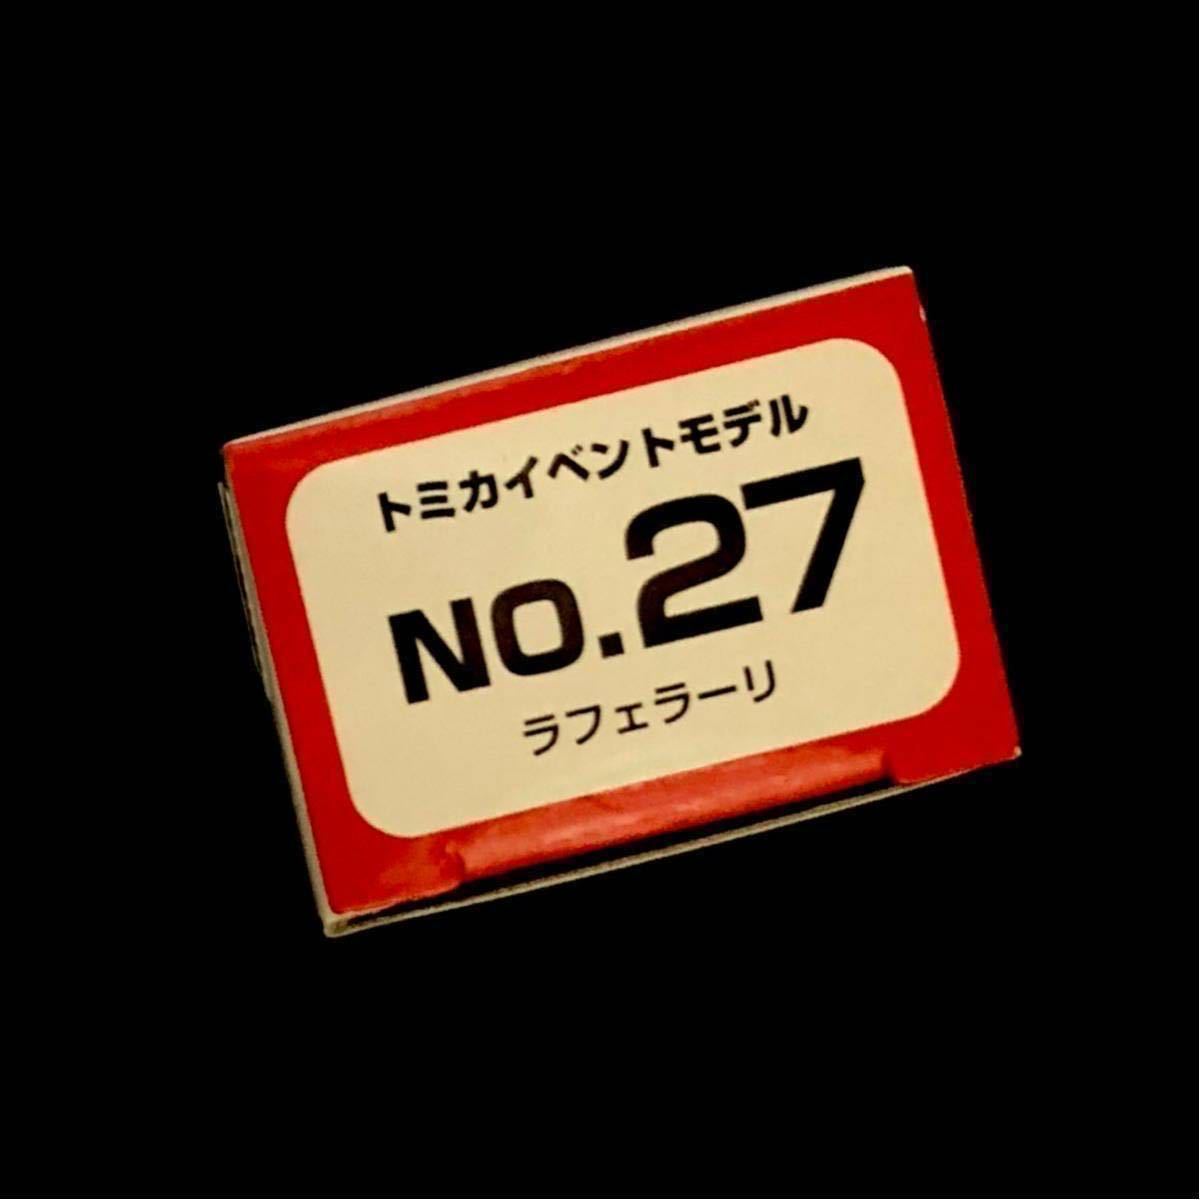 トミカ ラフェラーリ 白 イベント限定 トミカ博 横浜 新品 No.27 b